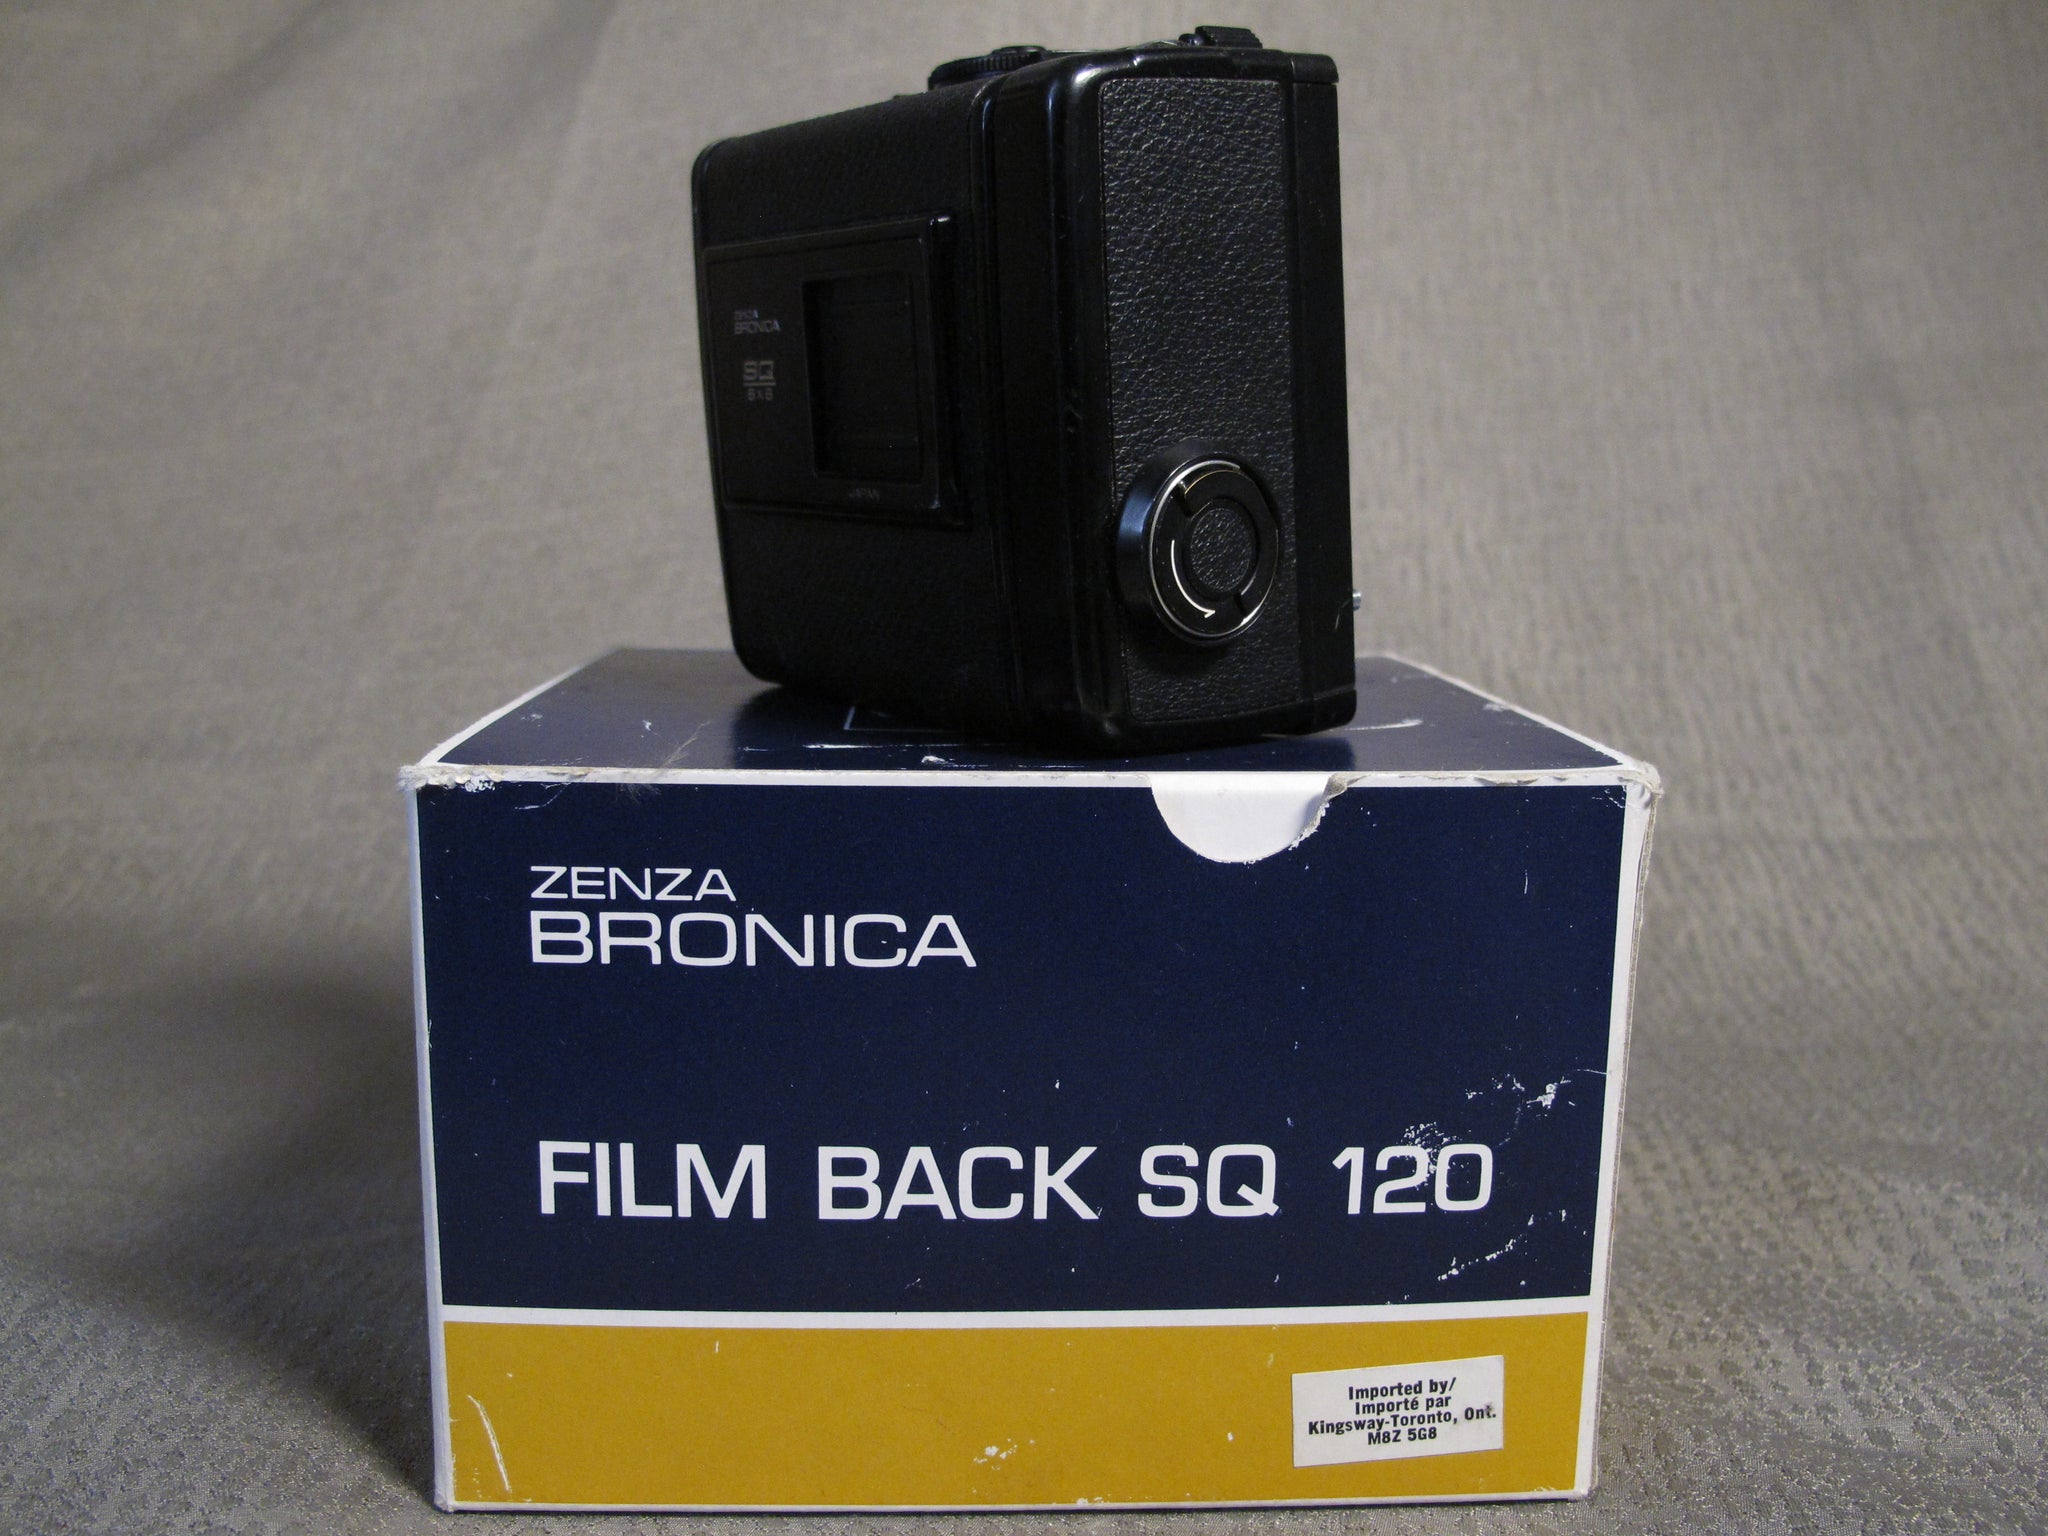 Zenza bronica SQ 120 フィルムバッグホルダー - フィルムカメラ